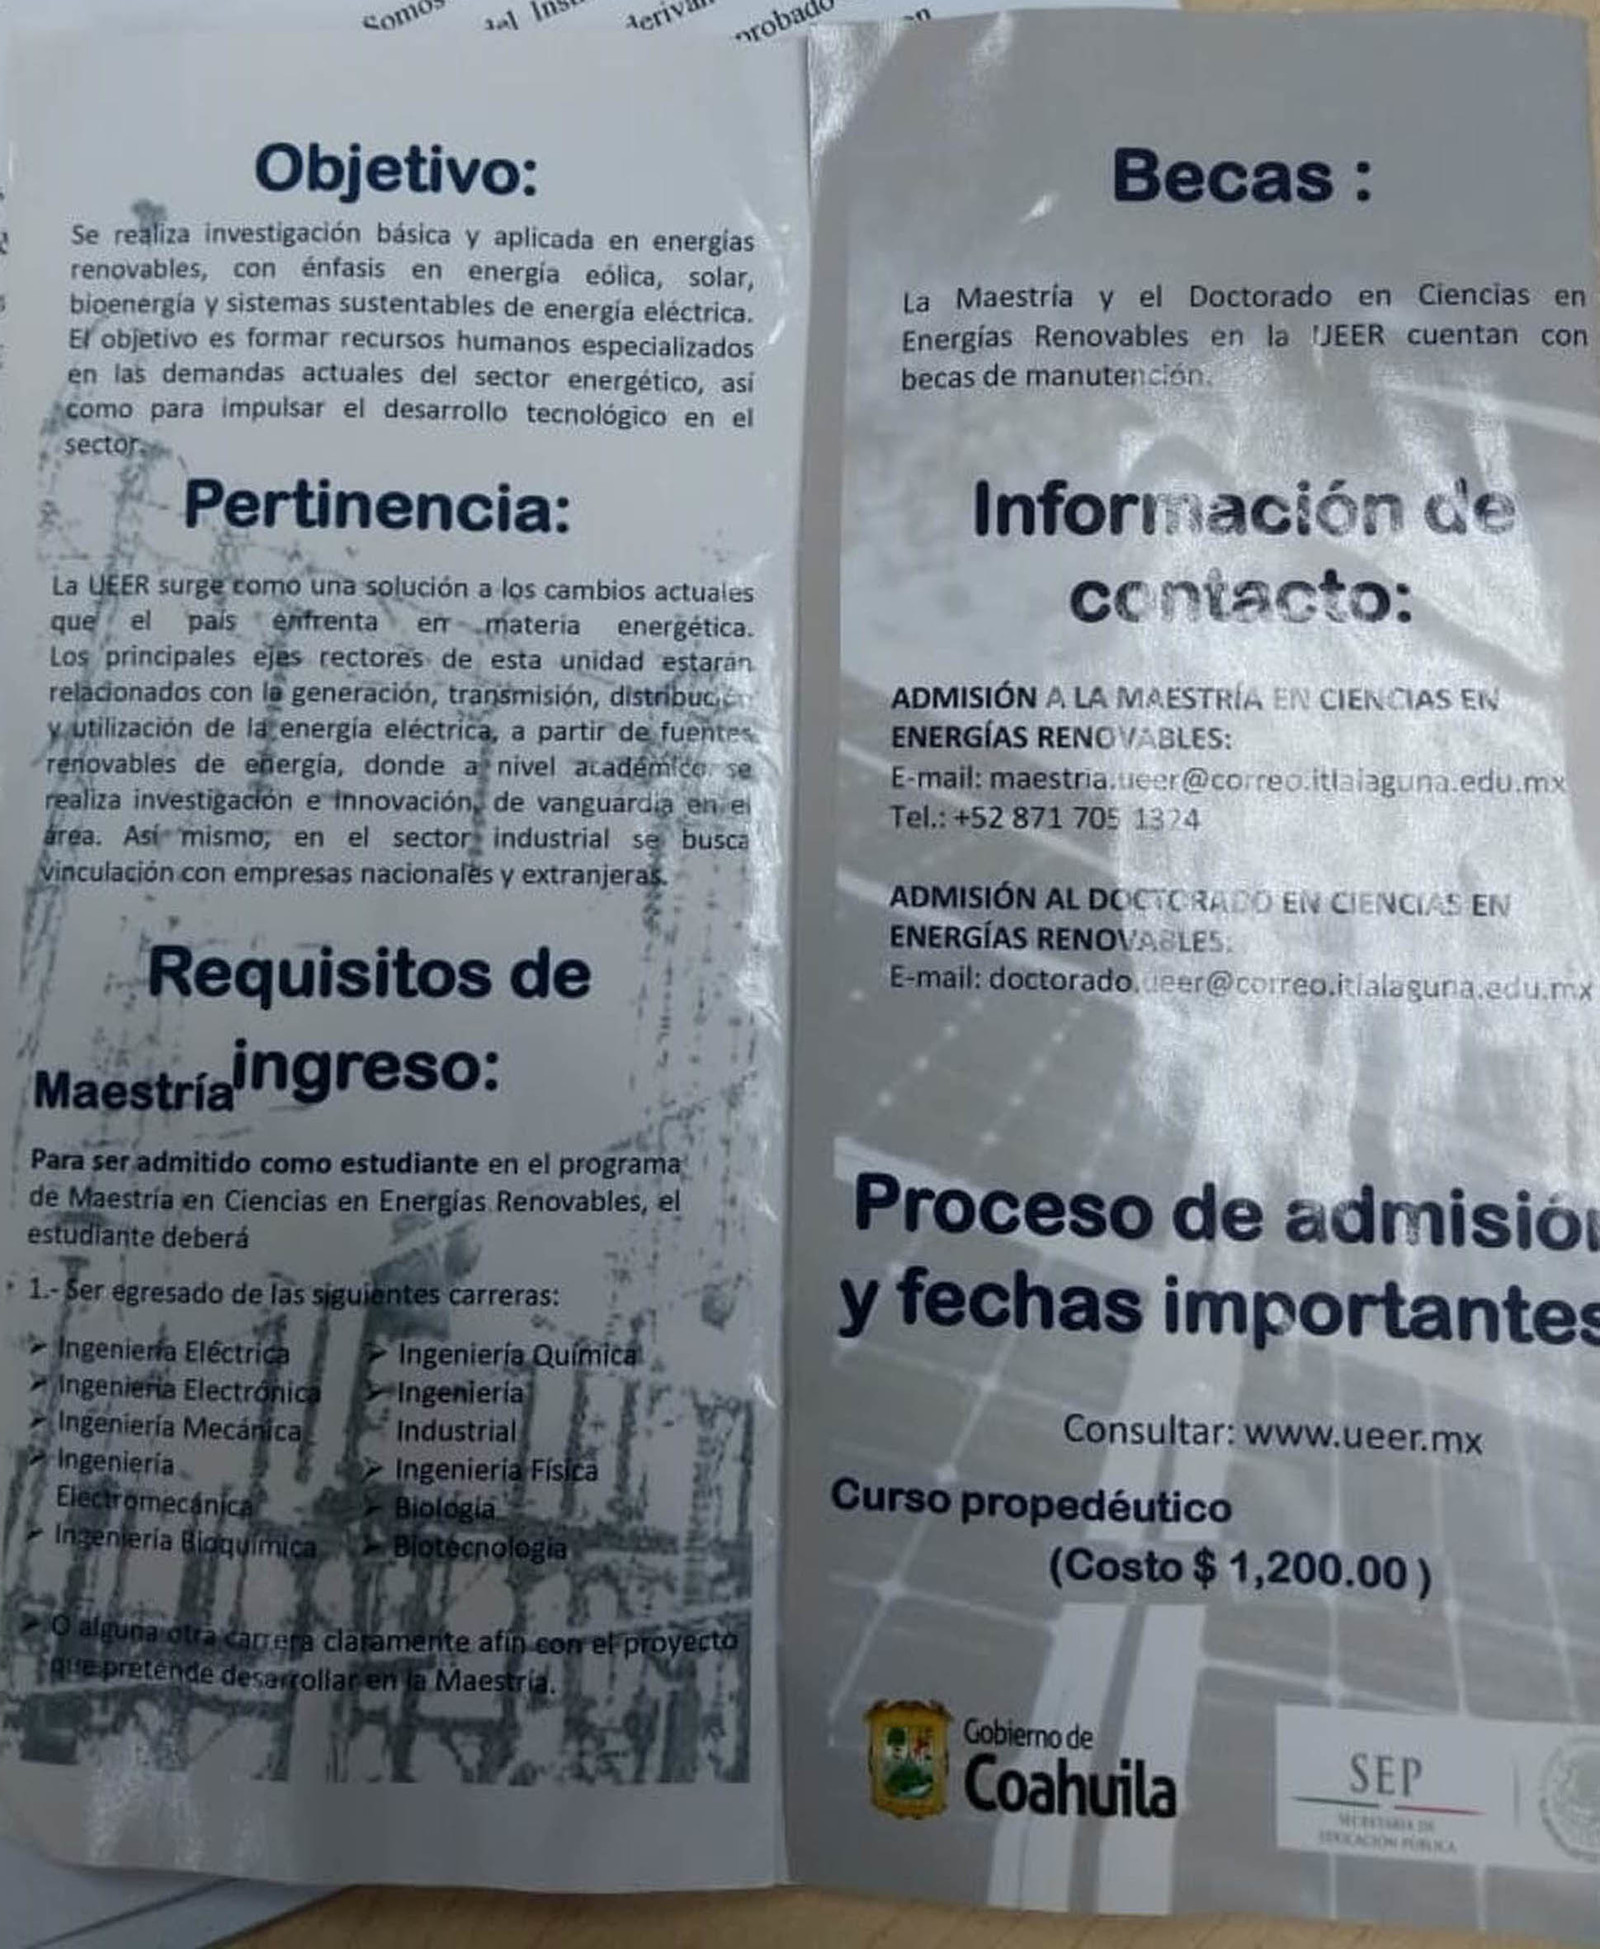 Atractivo. En un inicio, la institución educativa adscrita al Tecnológico Nacional de México difundió estos folletos para invitar a participar en el posgrado en Ciencias en Energías Renovables. (EL SIGLO DE TORREÓN) 